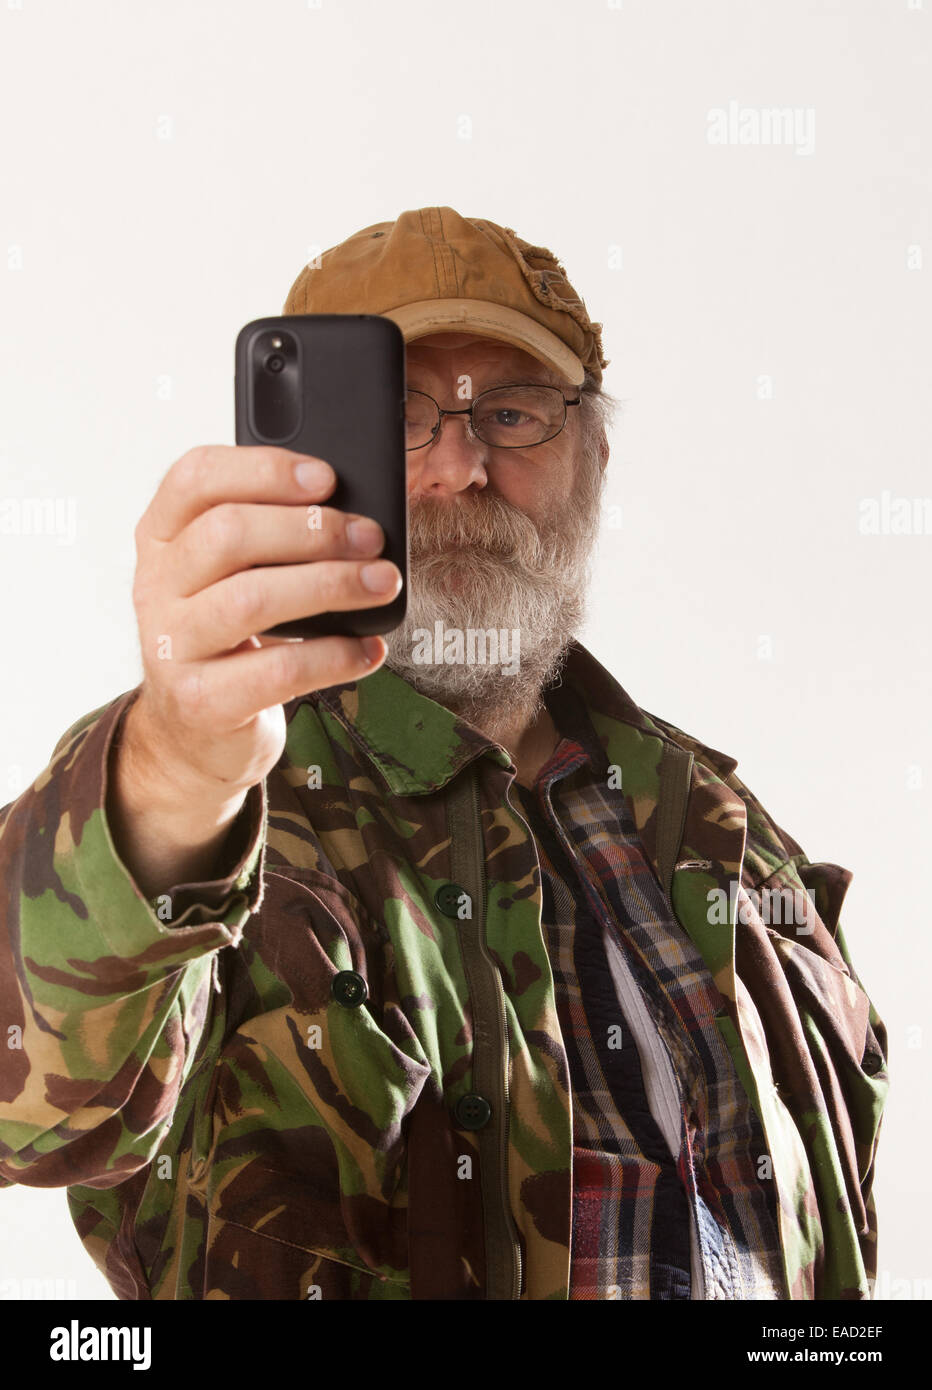 Mature Man with grey beard Stock Photo